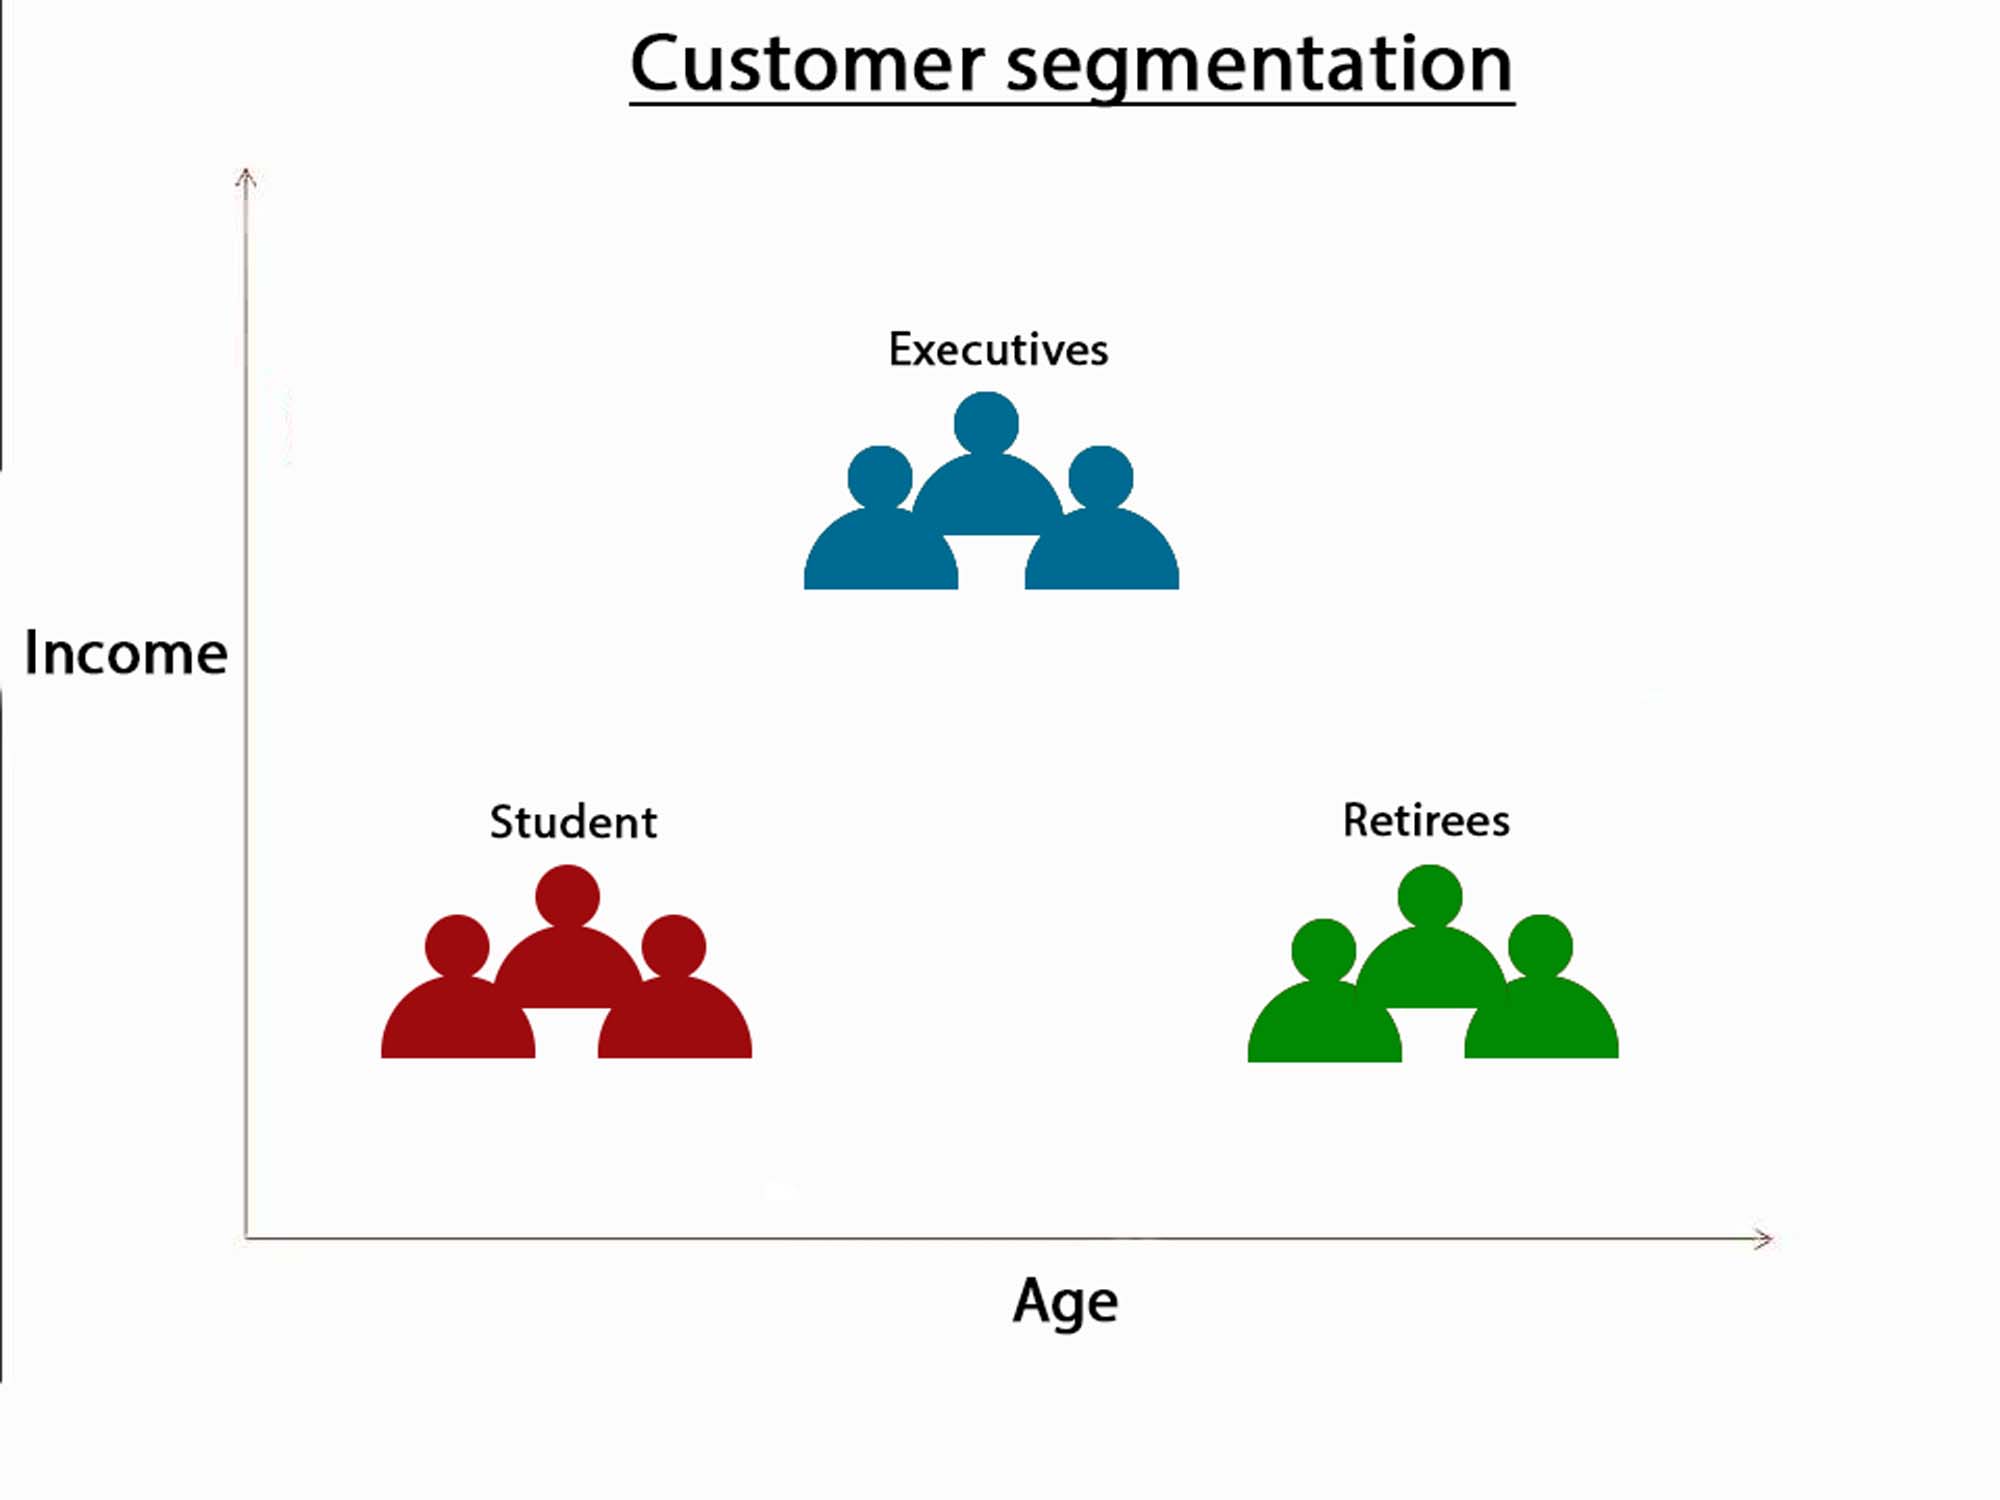 Customer segmentation and prediction